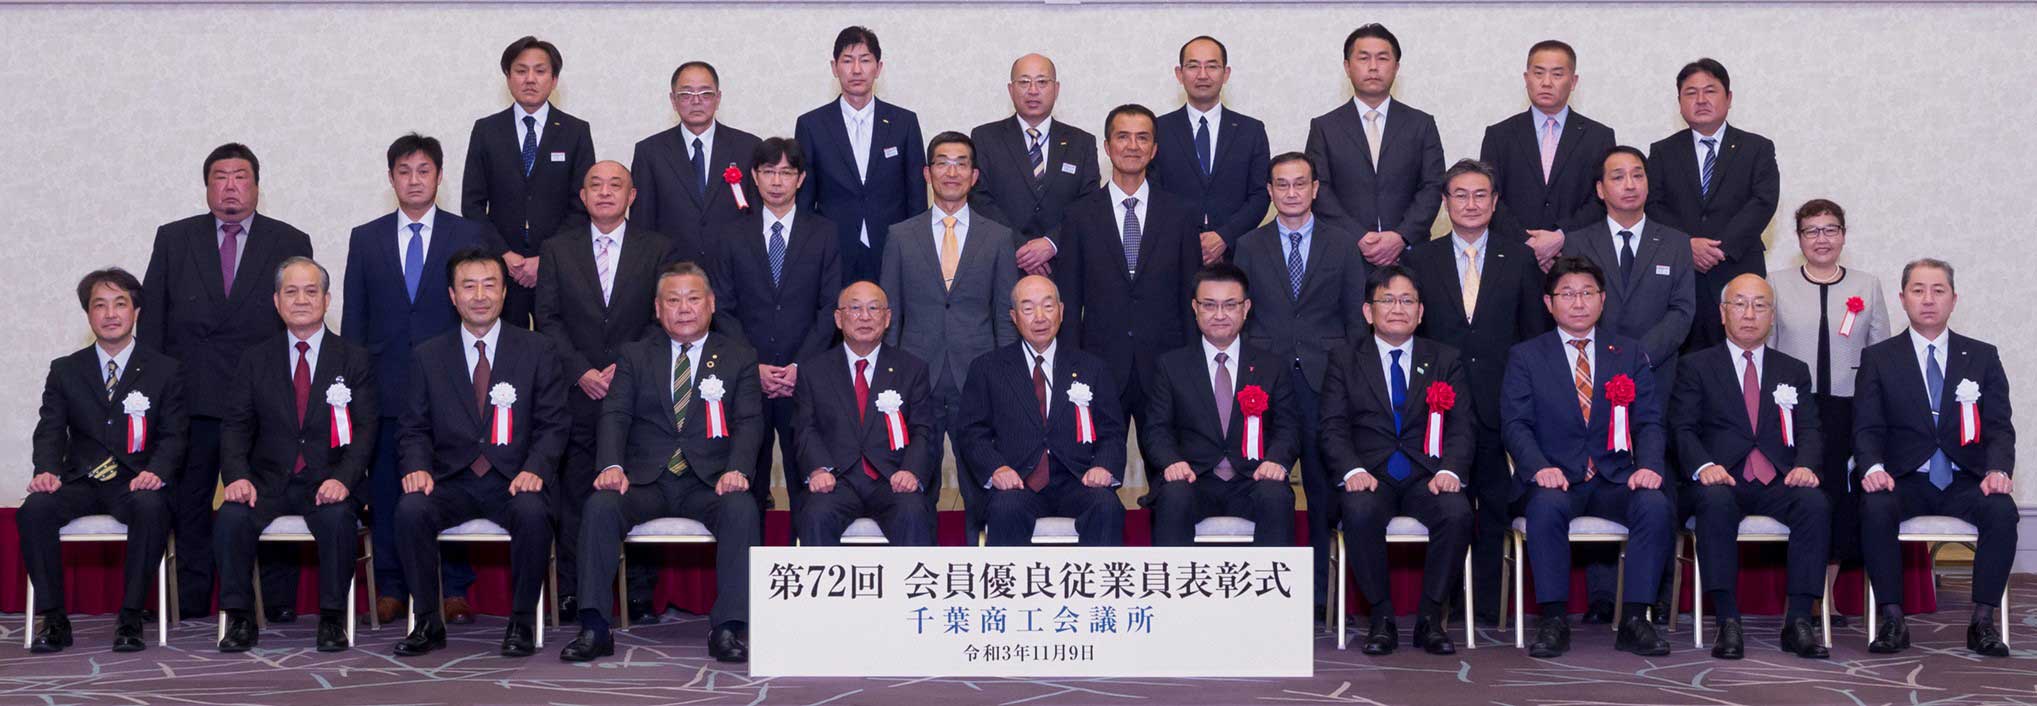 千葉商工会議所会員優良従業員表彰式に出席